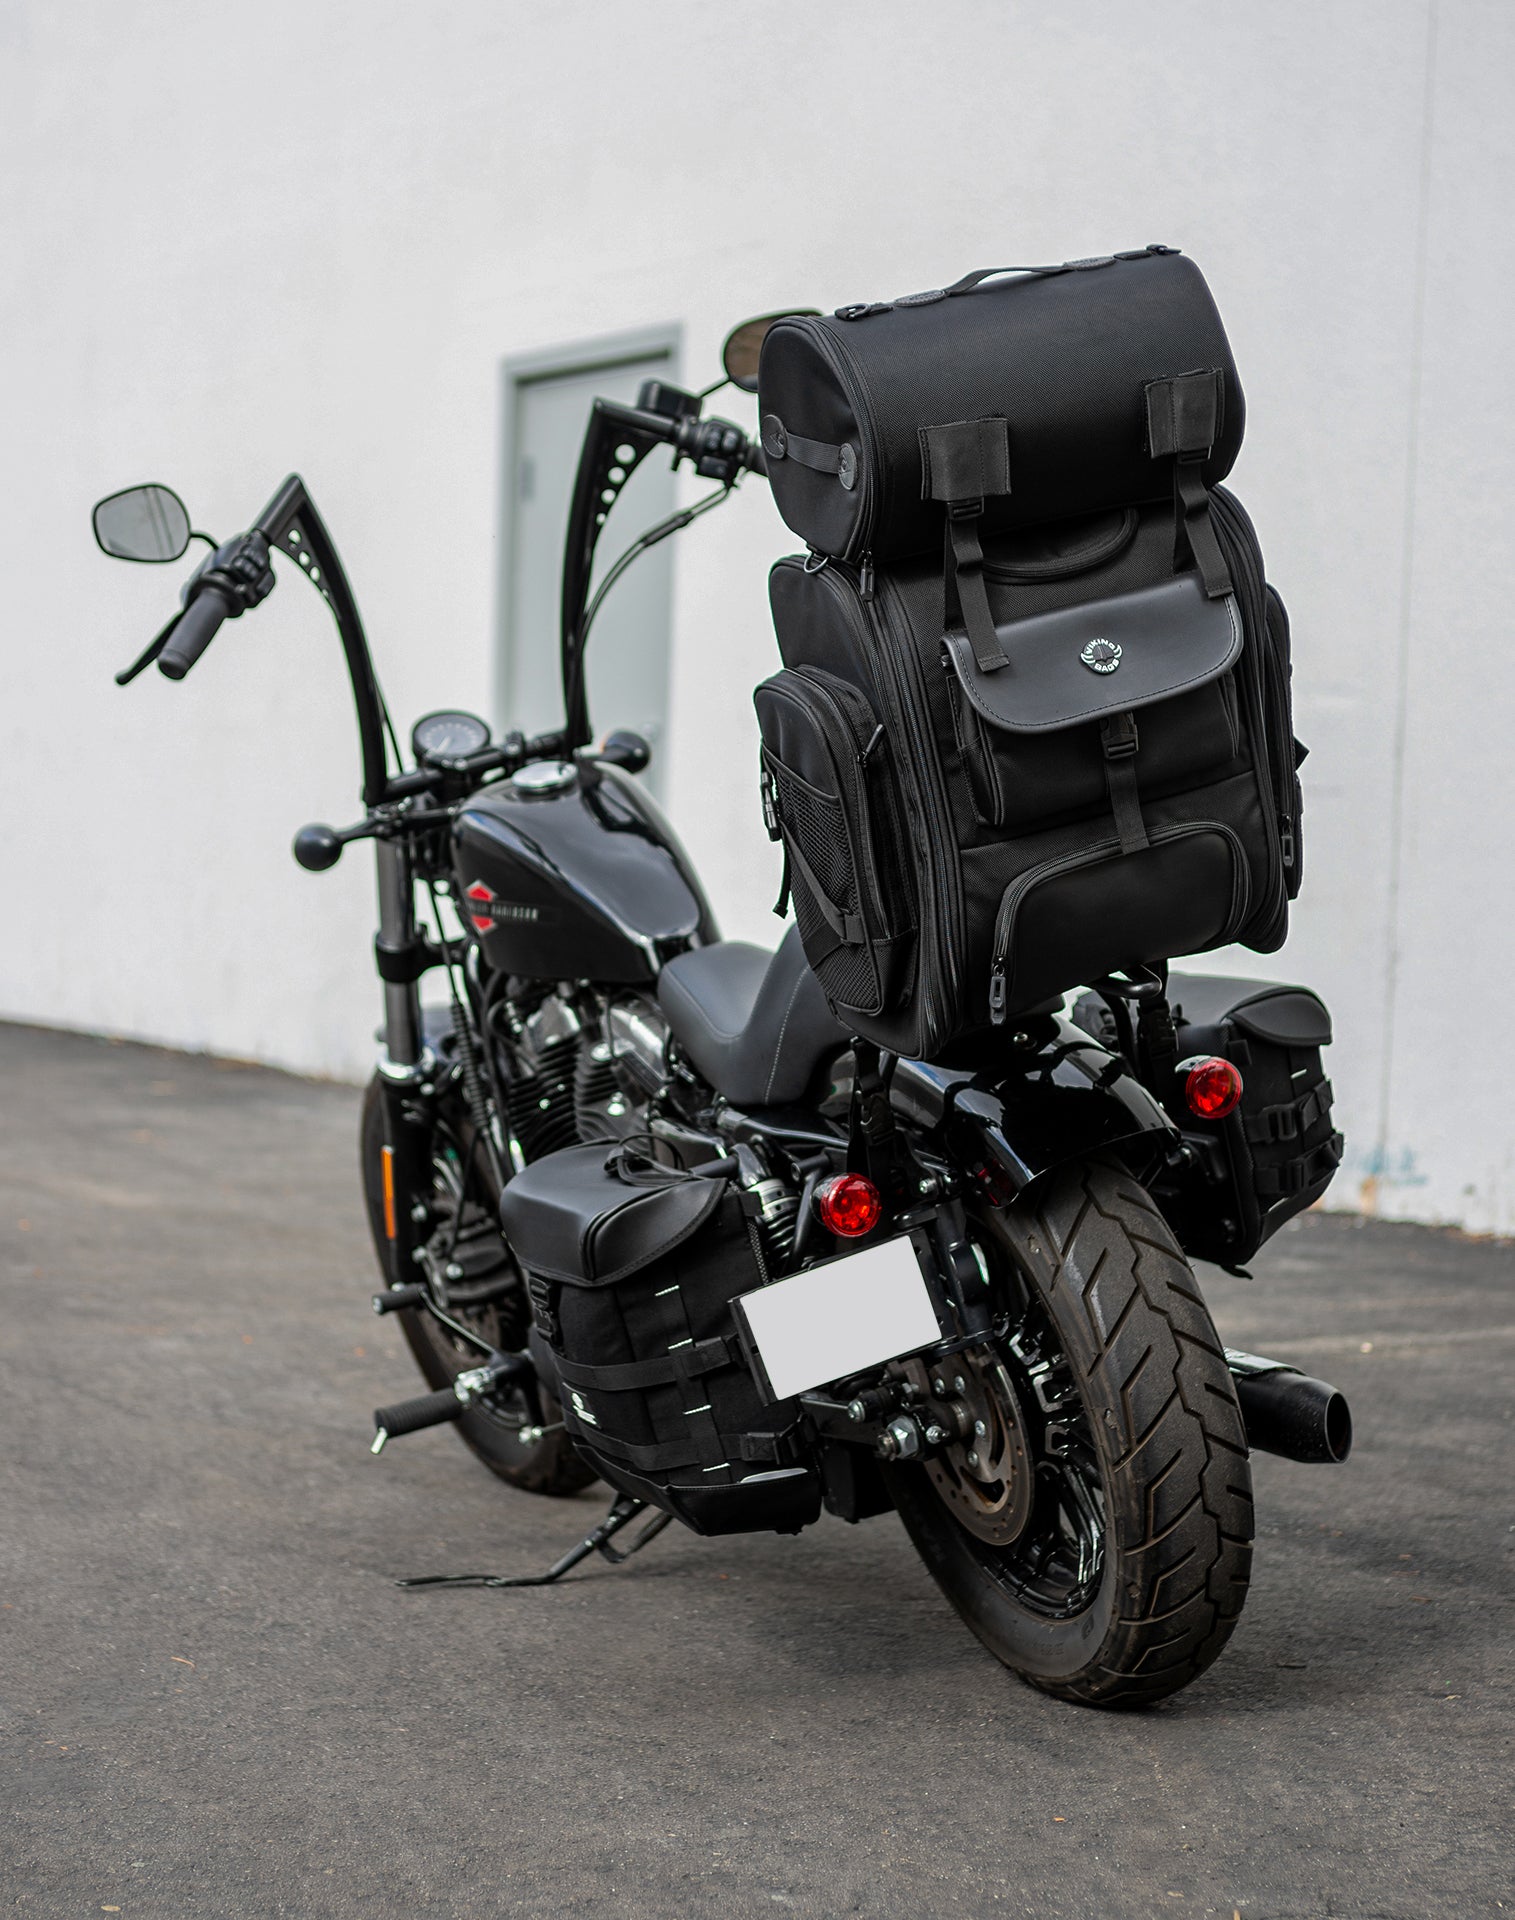 52L - Dwarf XL Suzuki Motorcycle Sissy Bar Bag